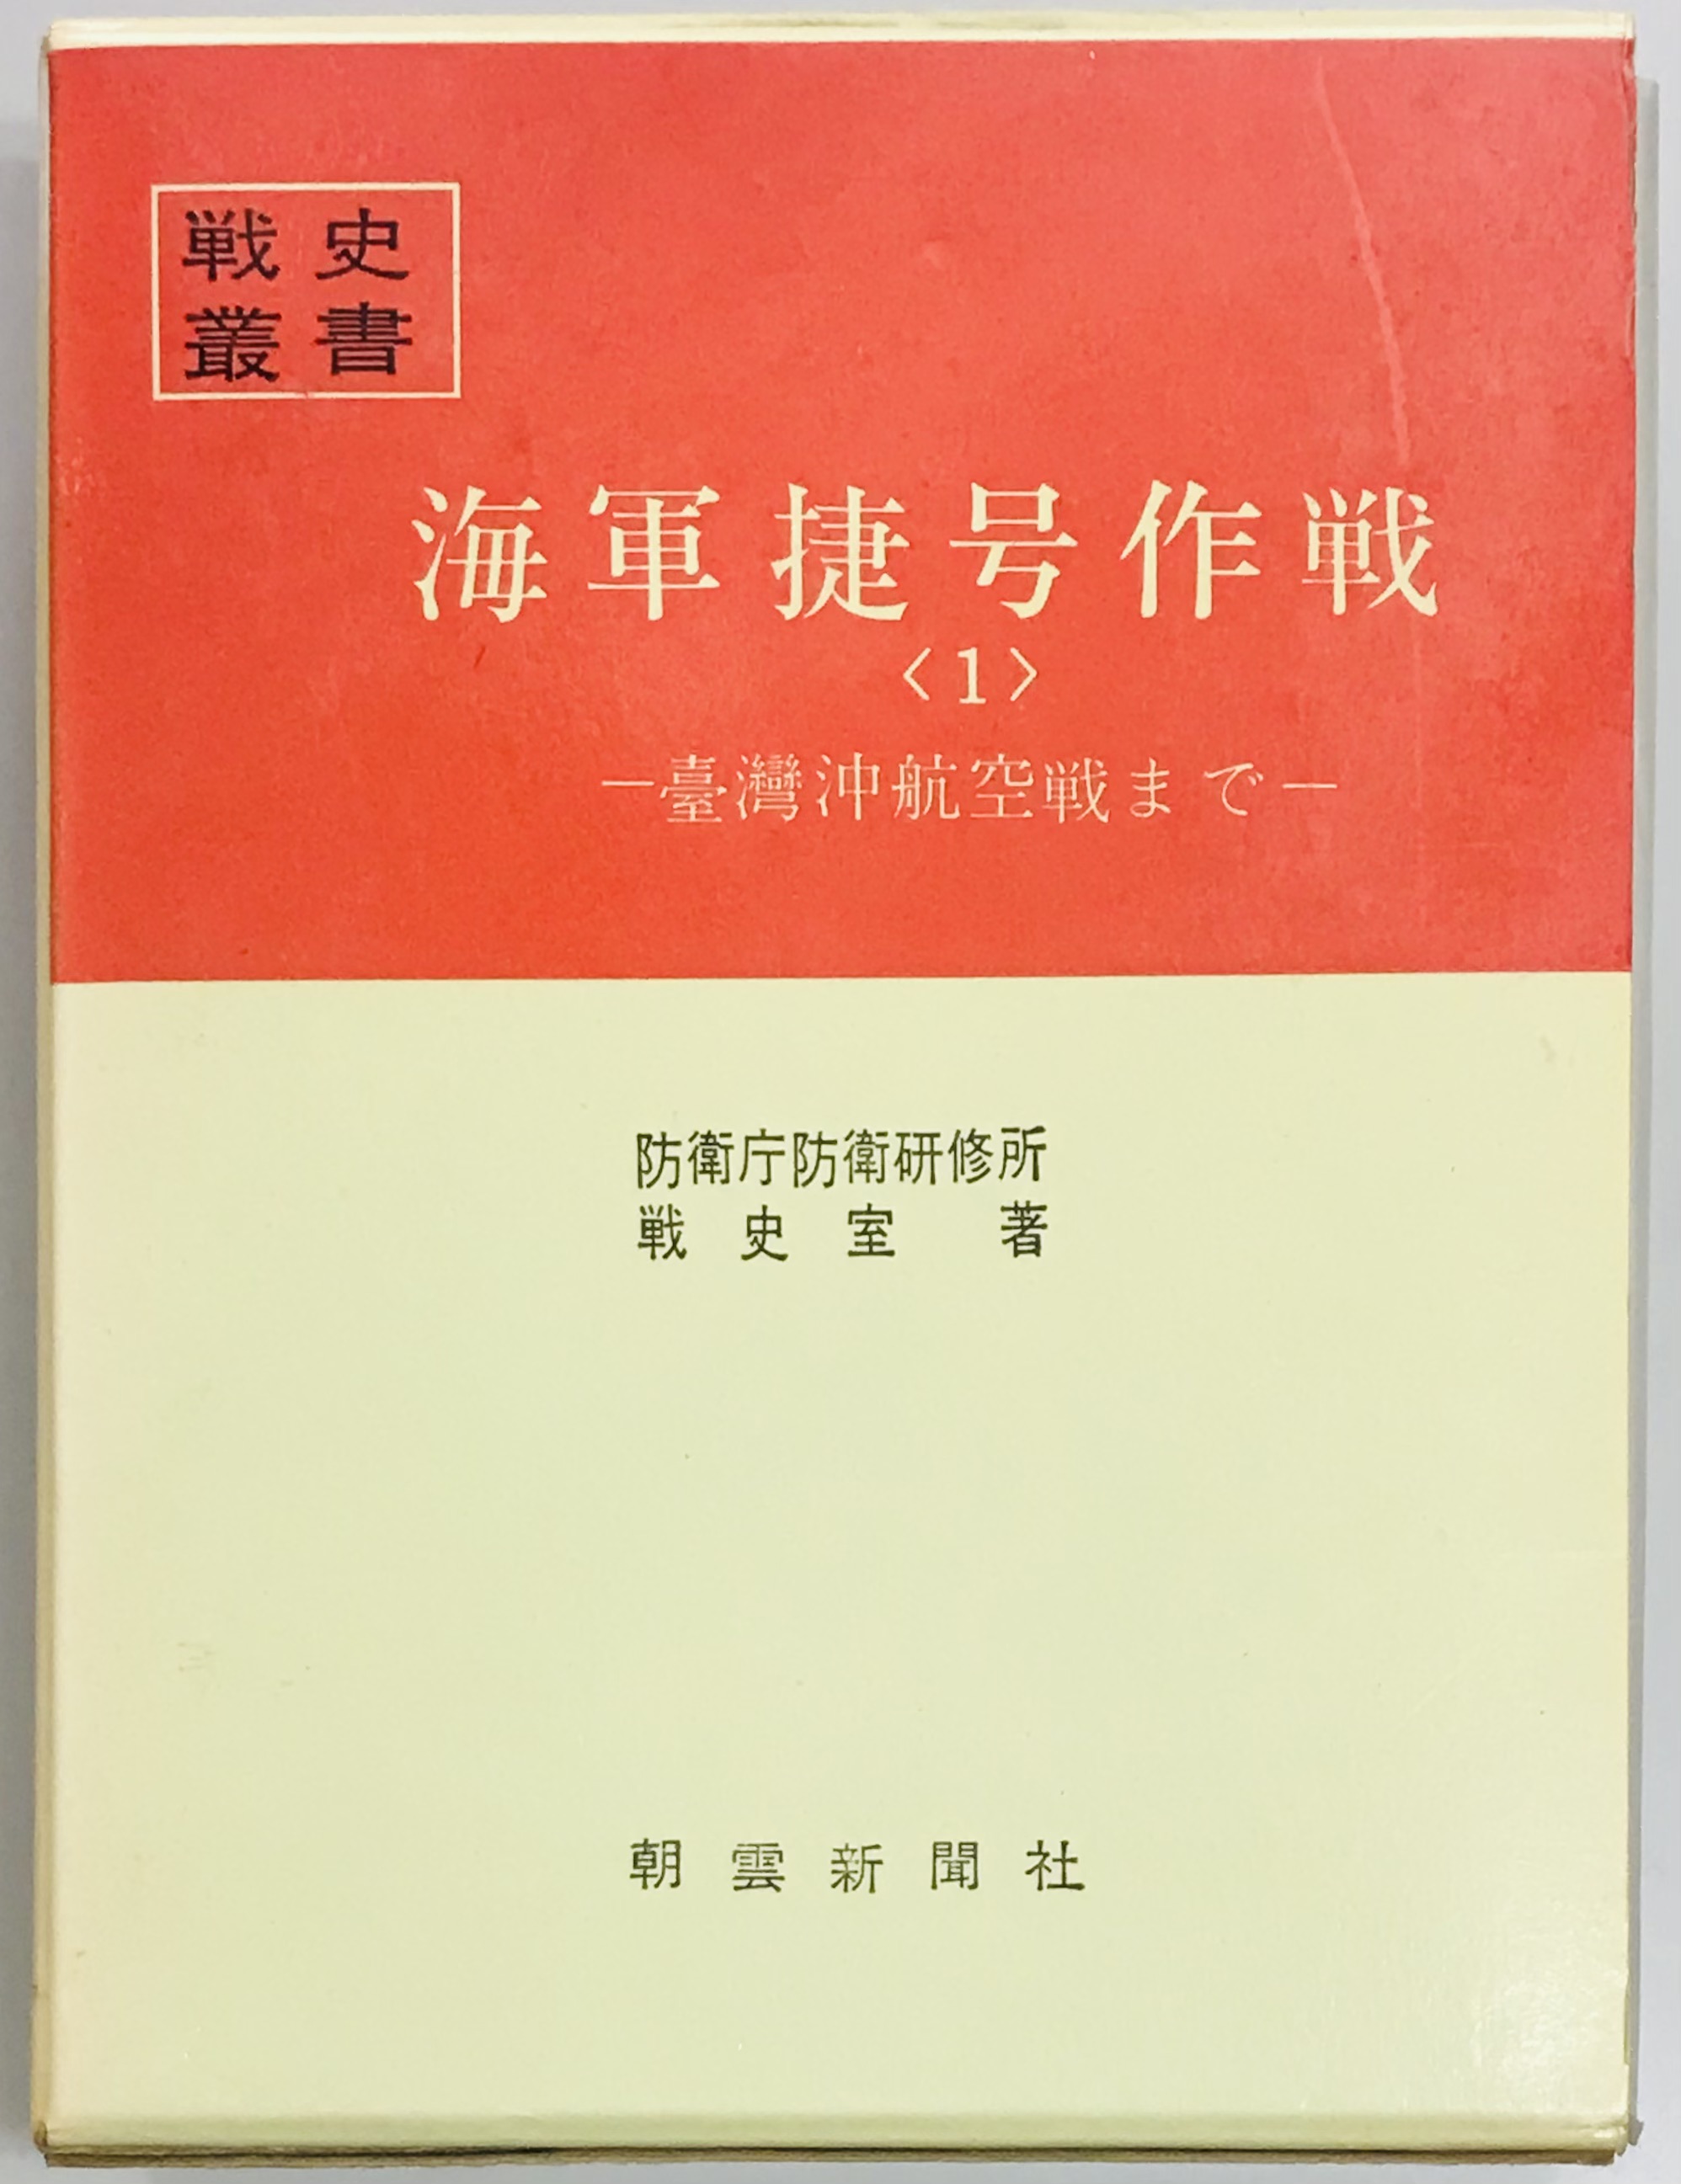 海軍捷号作戦〈1〉台湾沖航空戦まで (1970年) (戦史叢書)-